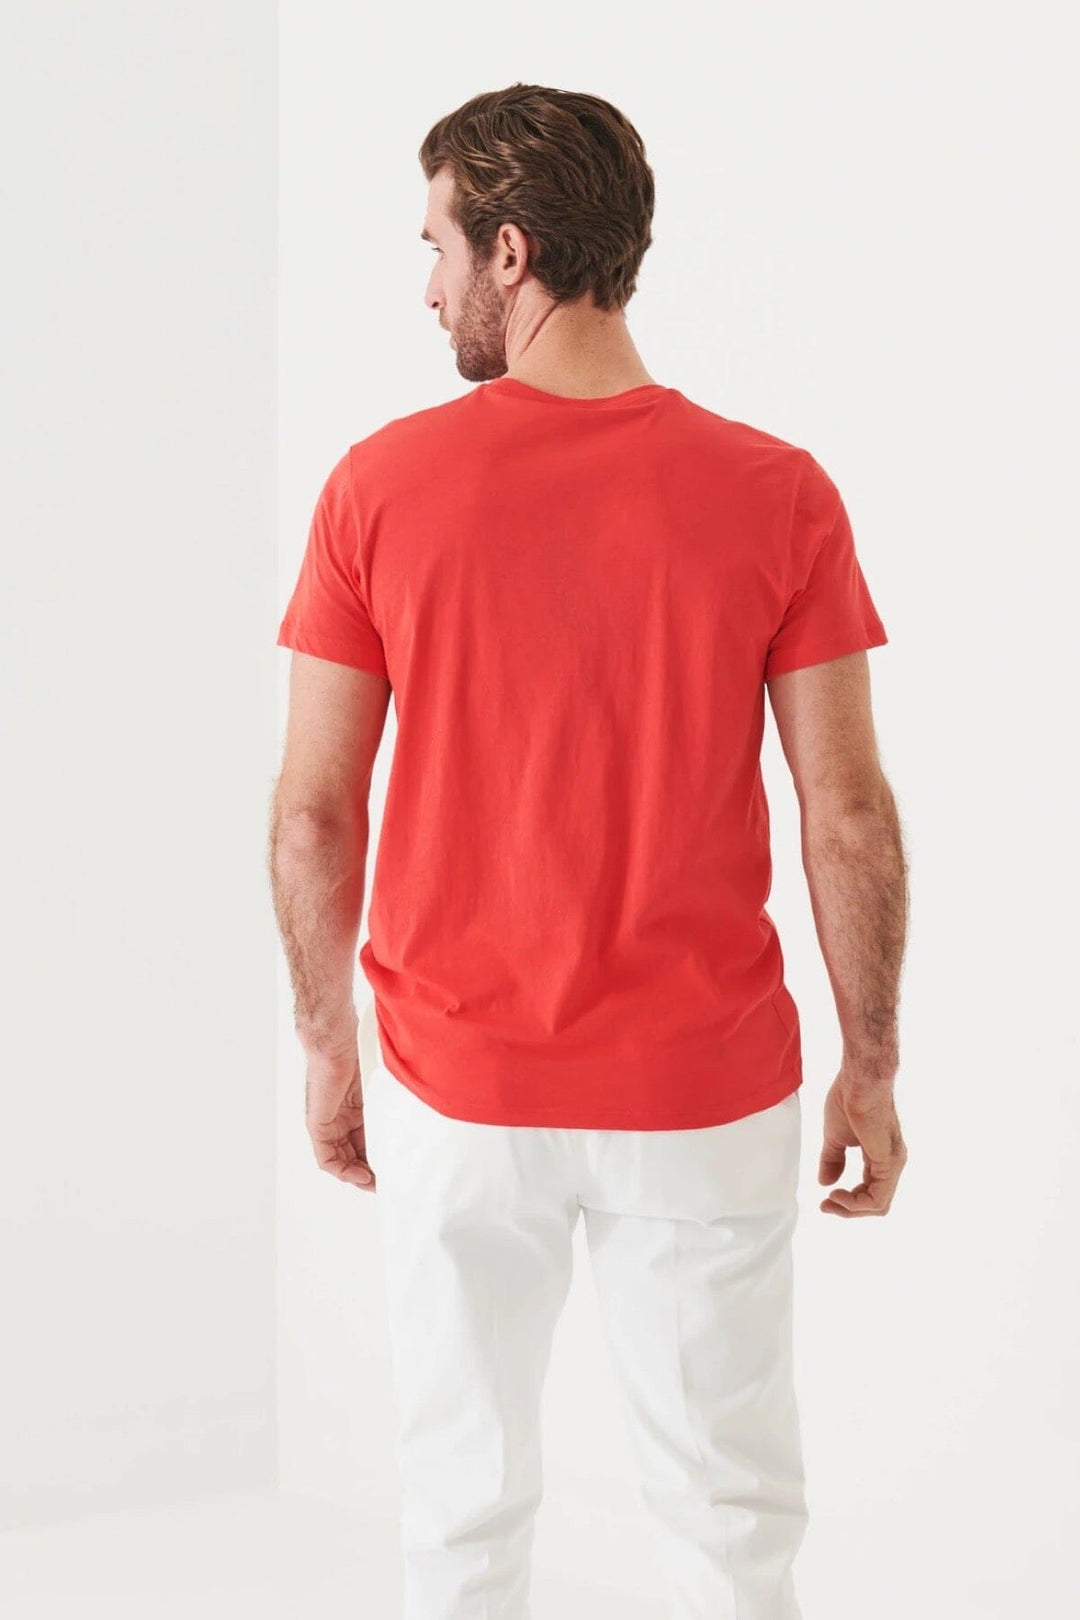 T-shirt léger en coton pima Homme - Hauts - T-shirt Patrick Assaraf